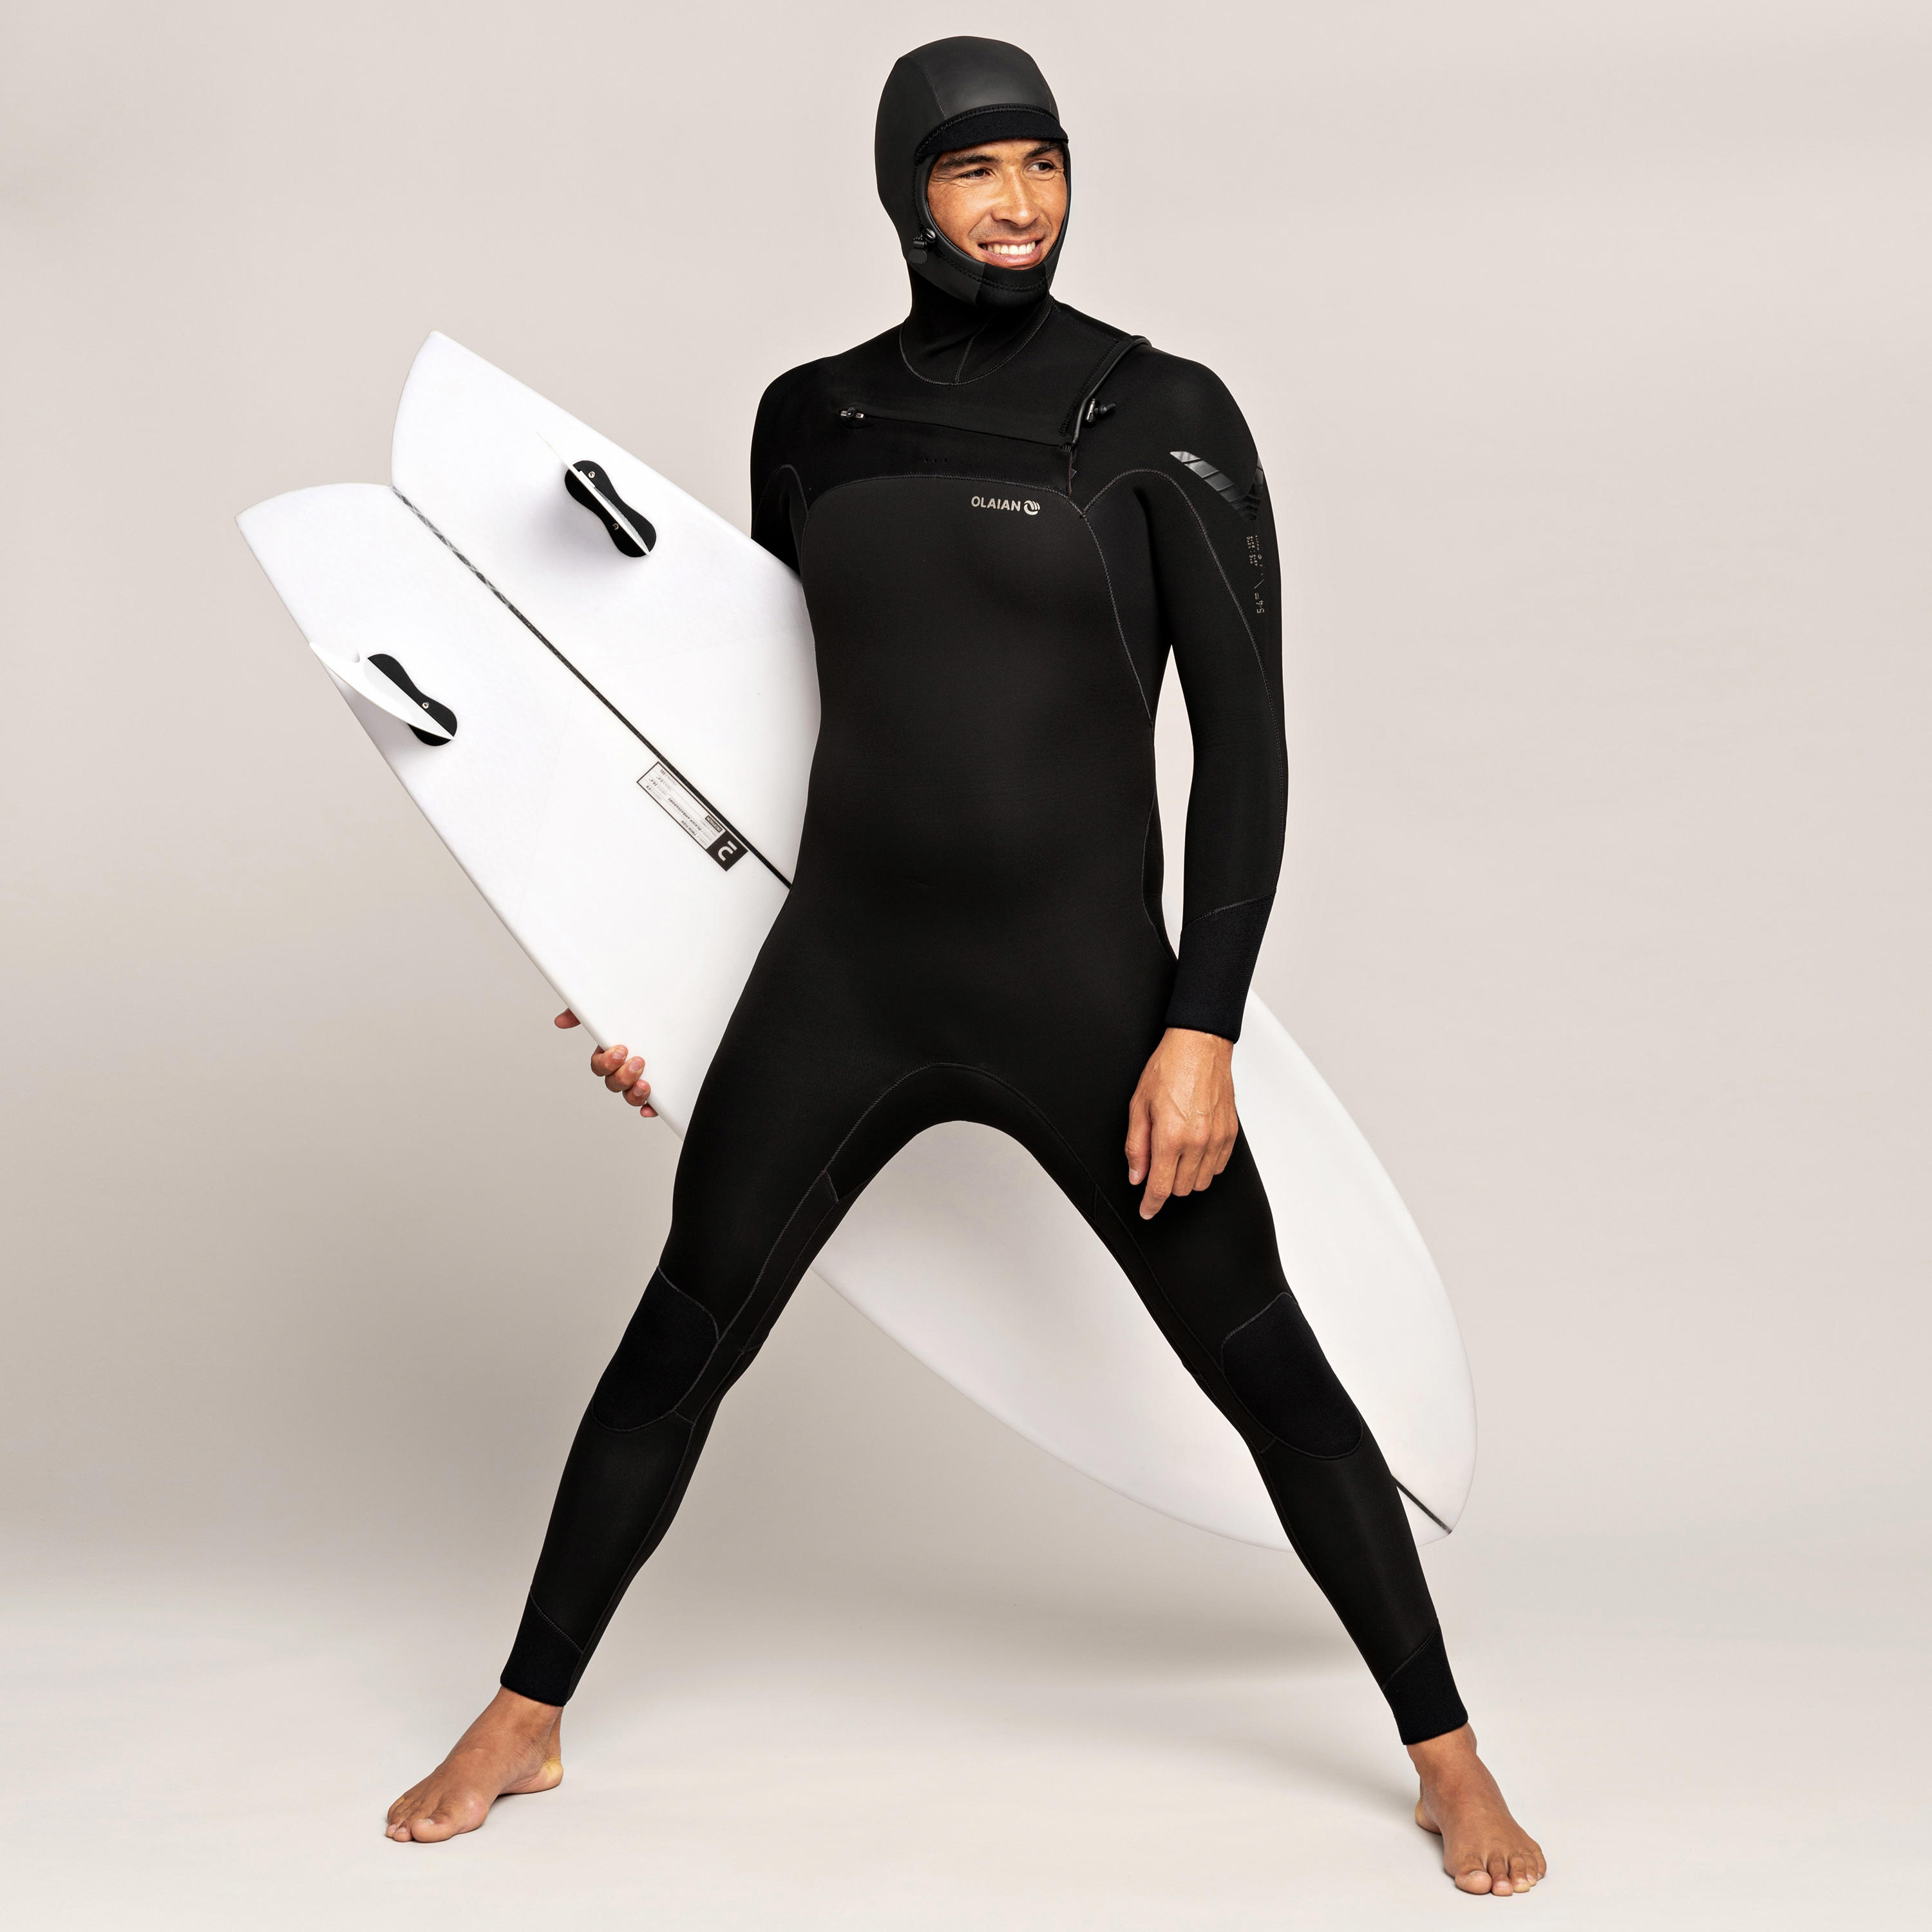 OLAIAN Neoprenanzug Surfen Herren 5/4 mm mit Kopfhaube - Surf 900 XS